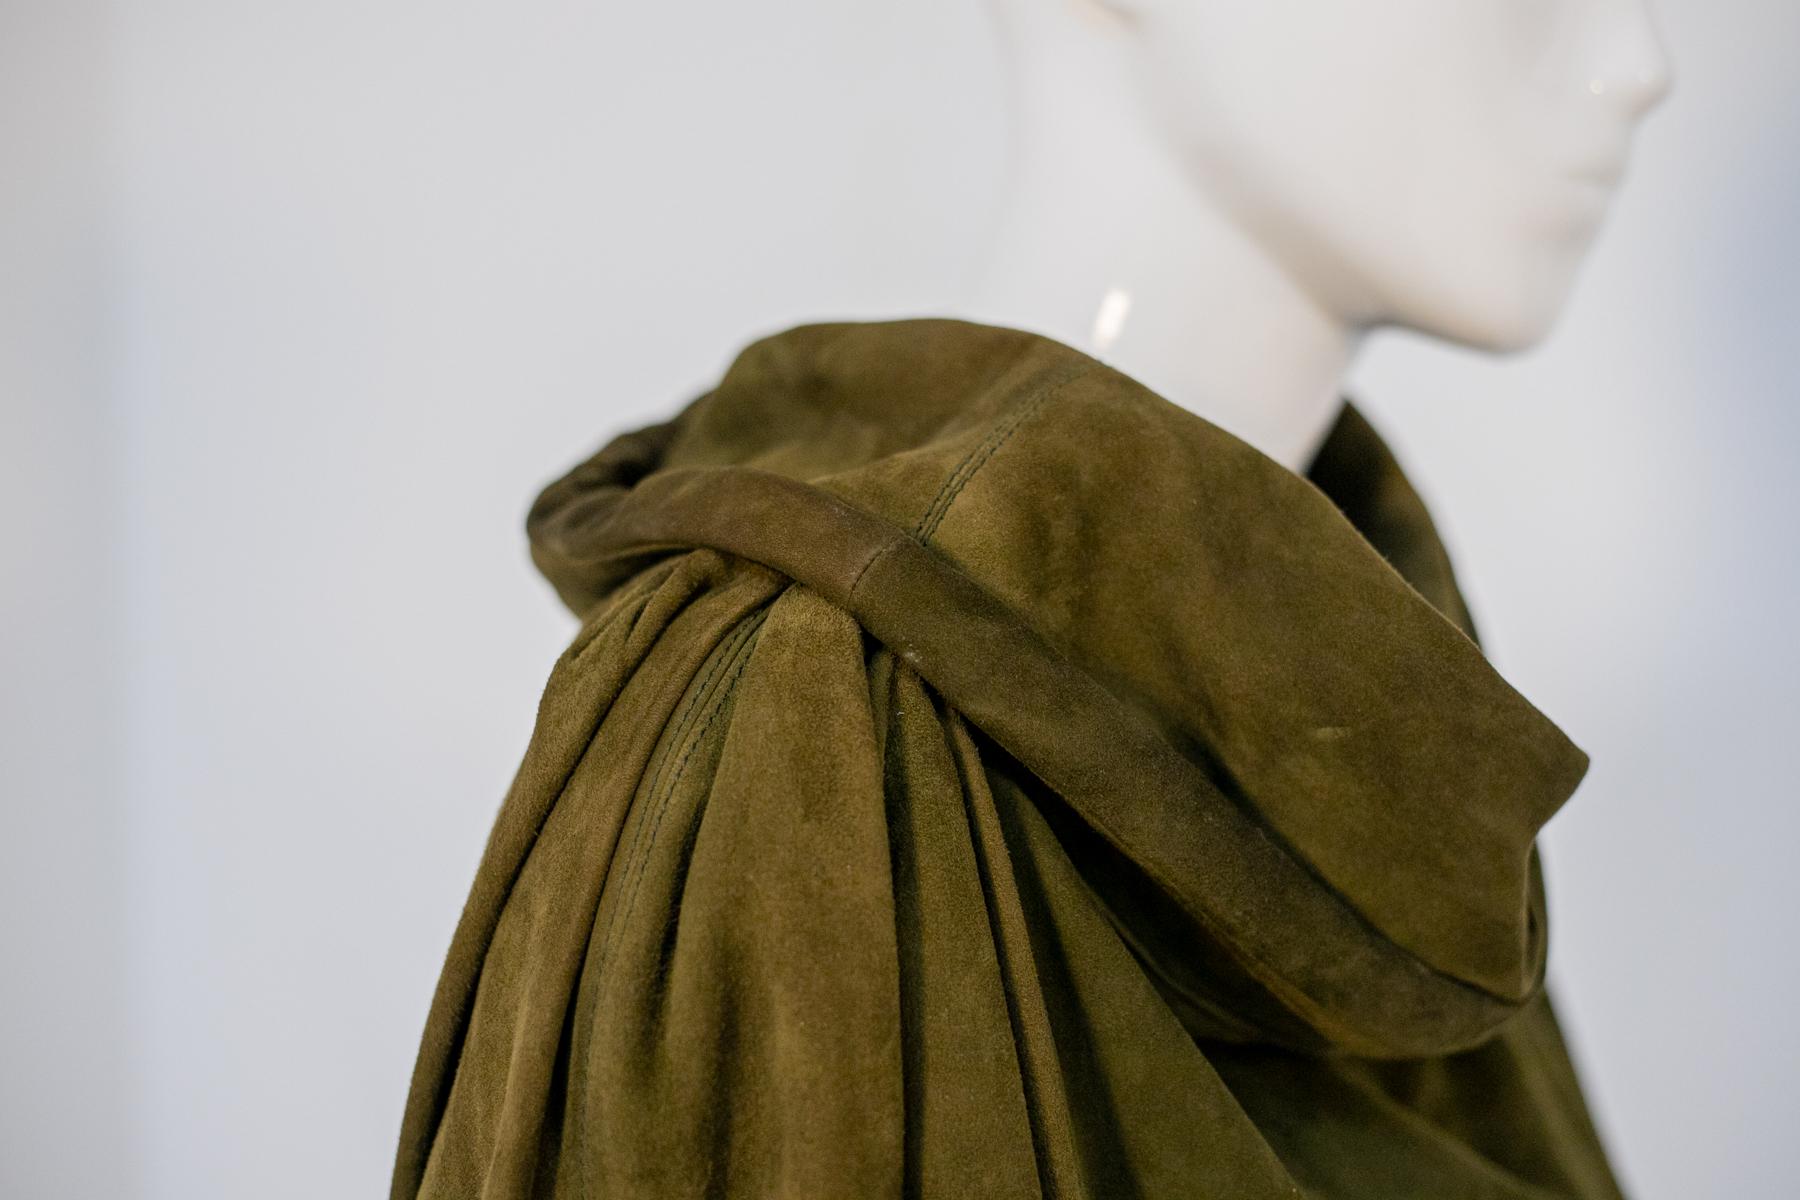 Manteau vintage particulier conçu dans les années 1990, fabriqué en Italie.
Le manteau est entièrement réalisé en très beau et élégant daim vert olive, avec des manches longues très douces.
Le col est le point fort du manteau : en effet, il n'a pas